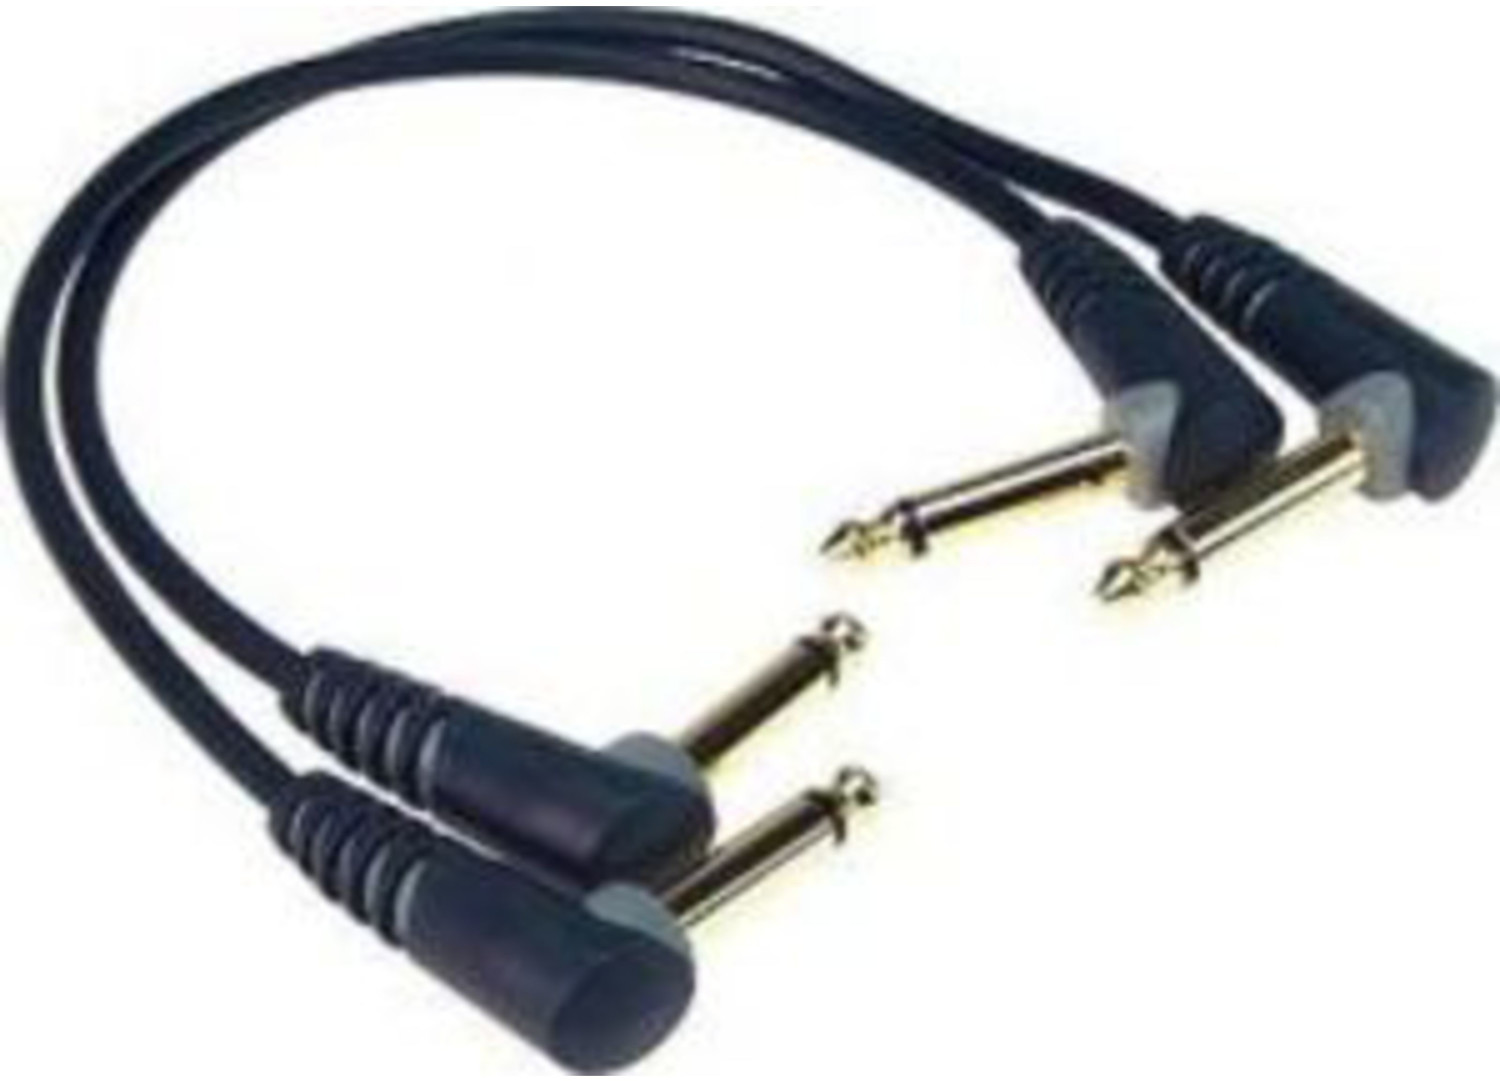 Photos - Cable (video, audio, USB) Klotz a-i-s Klotz AU-AJJ0030